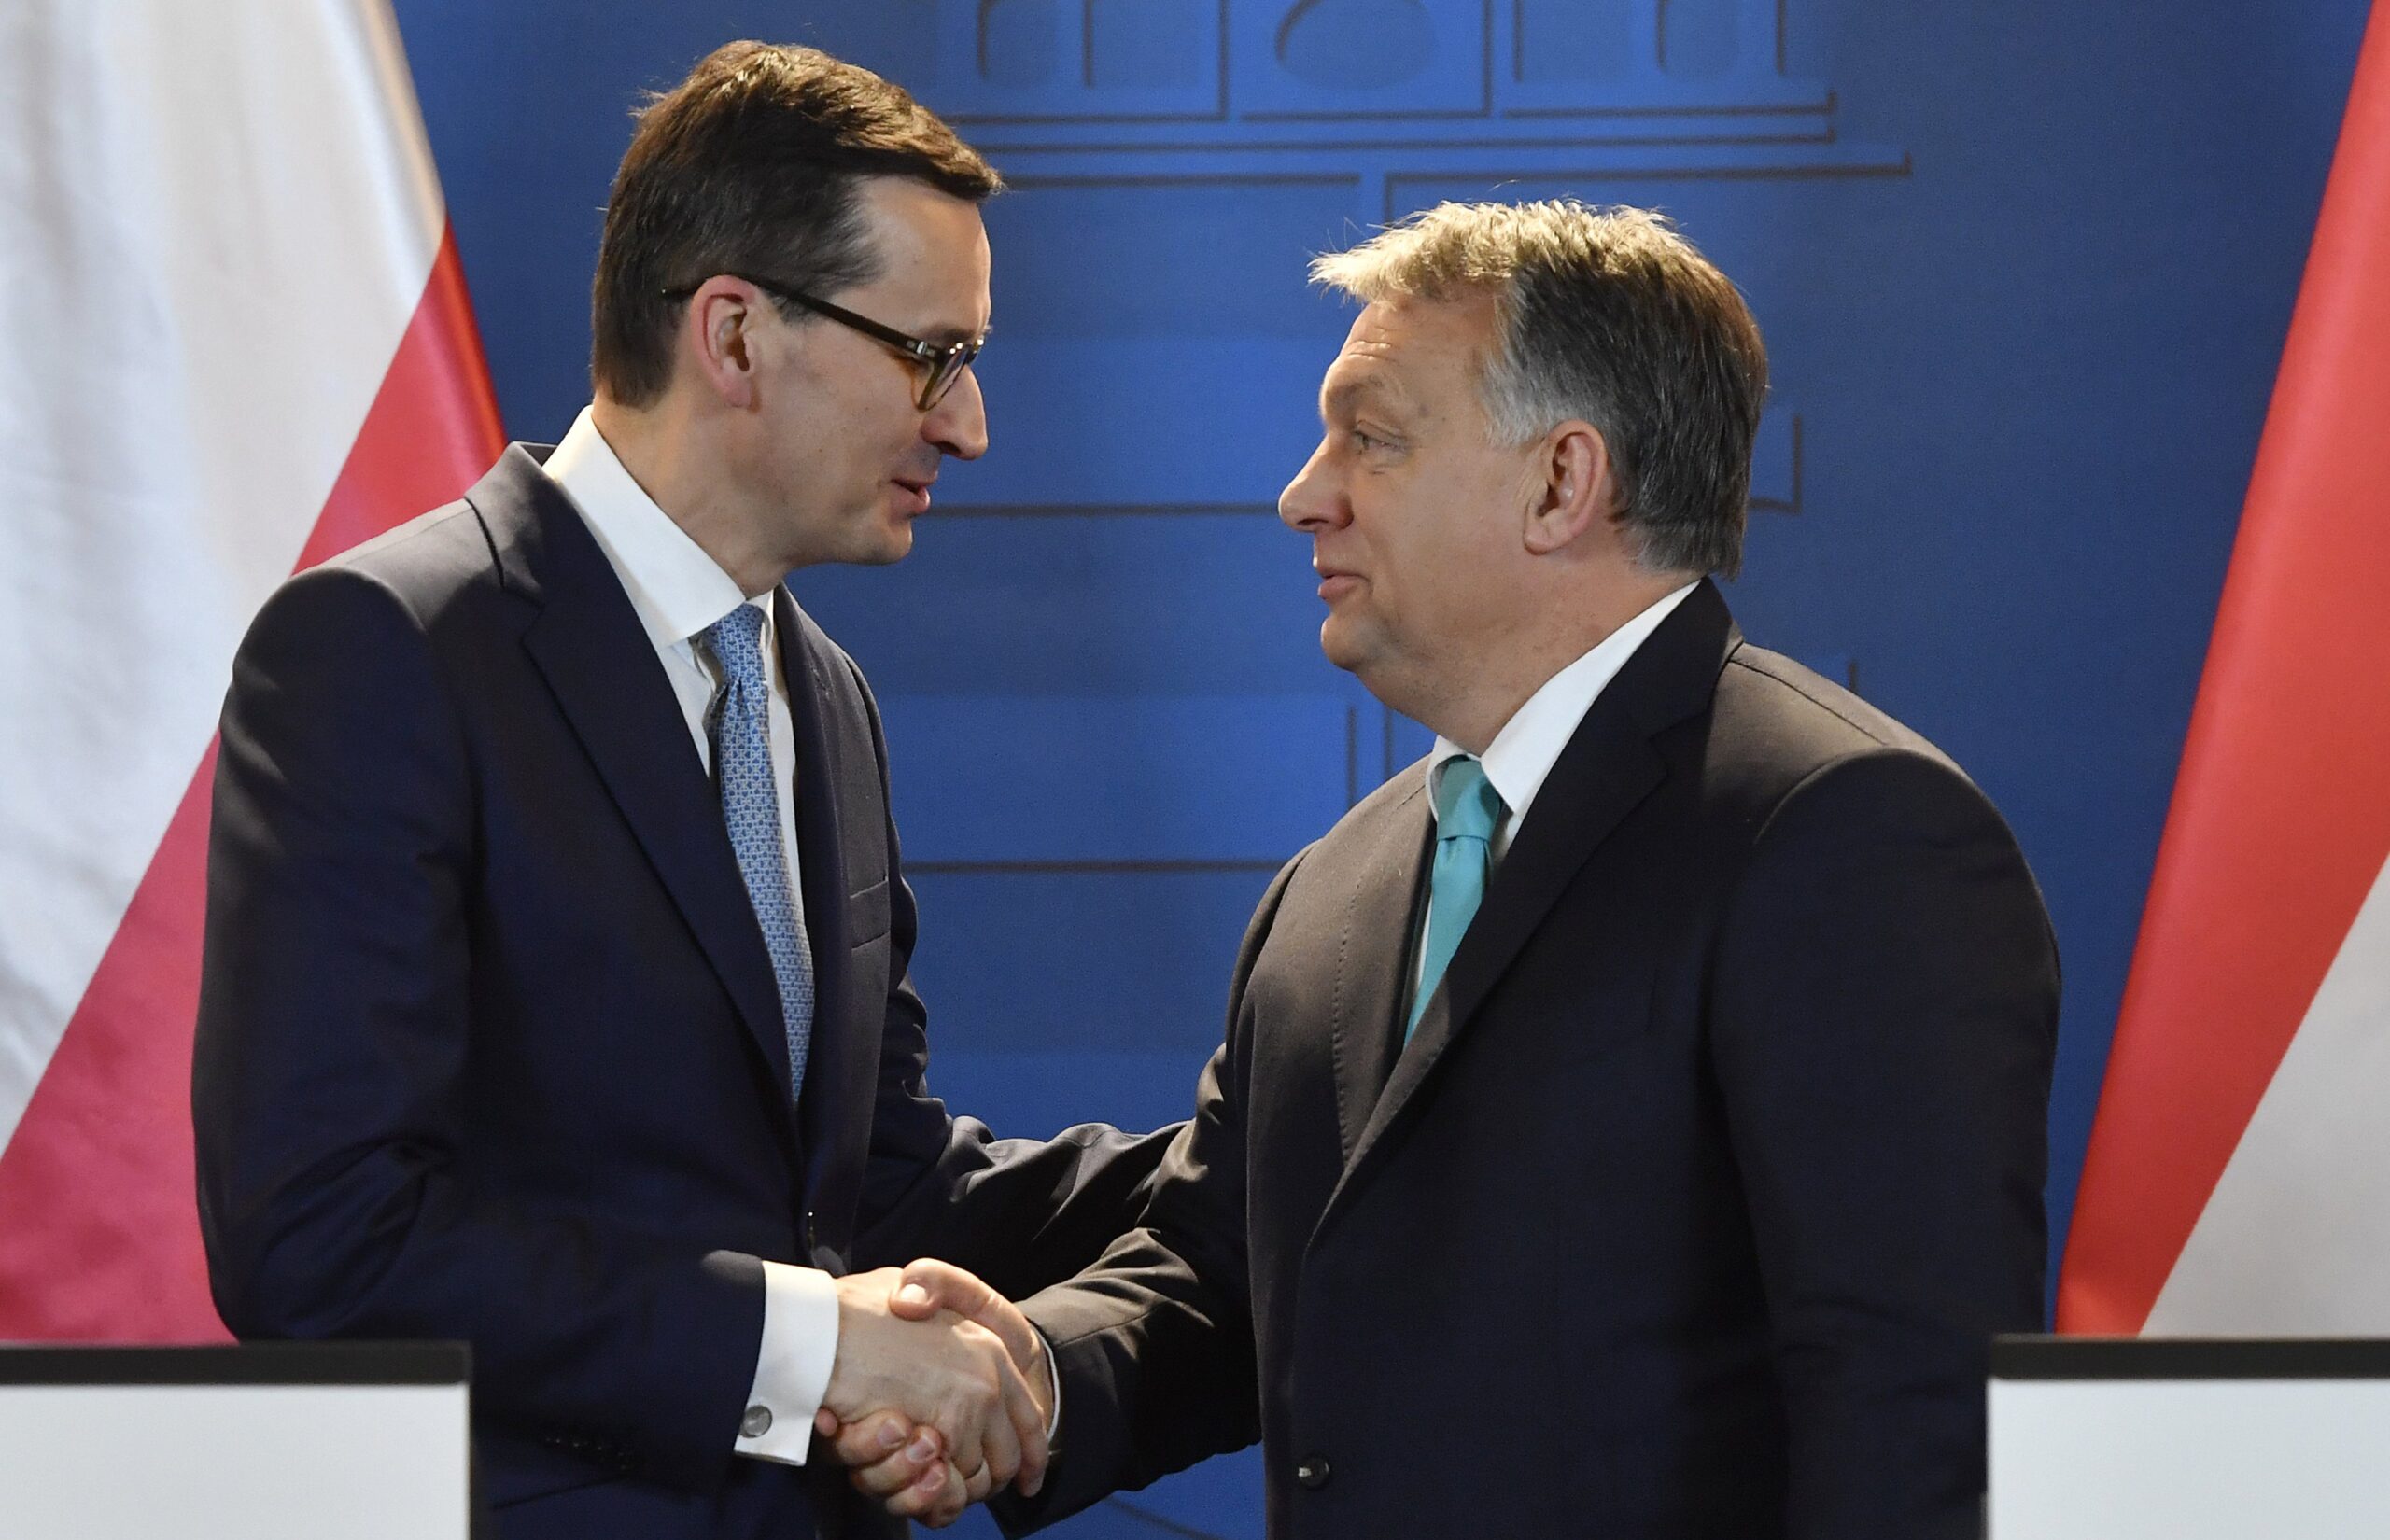 Польща заморожує відносини з Угорщиною через позицію щодо війни в Україні